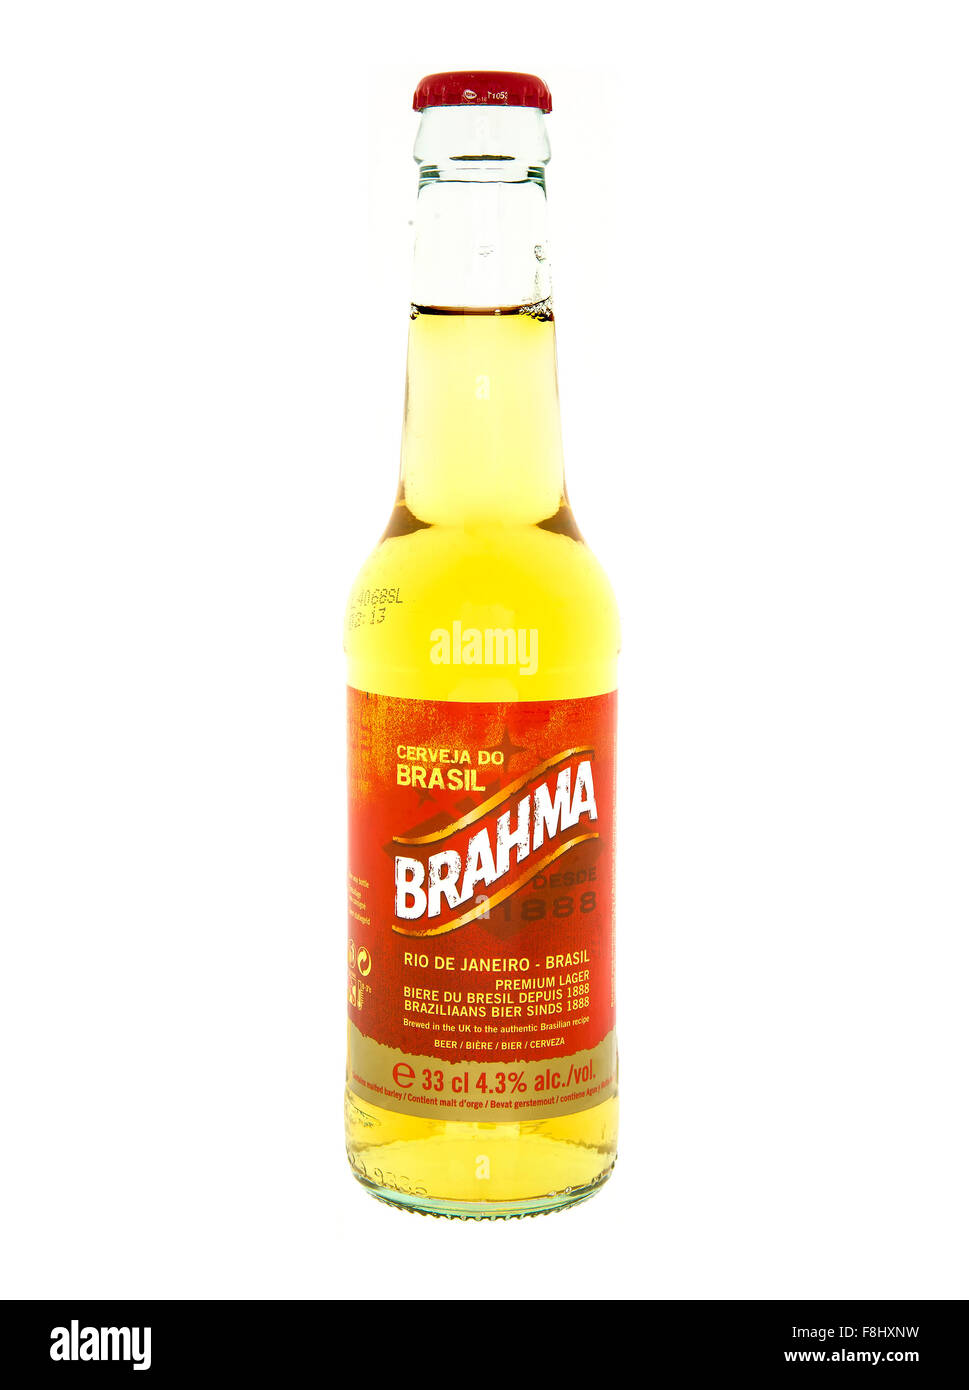 Bouteille de bière Brahma sur fond blanc Banque D'Images